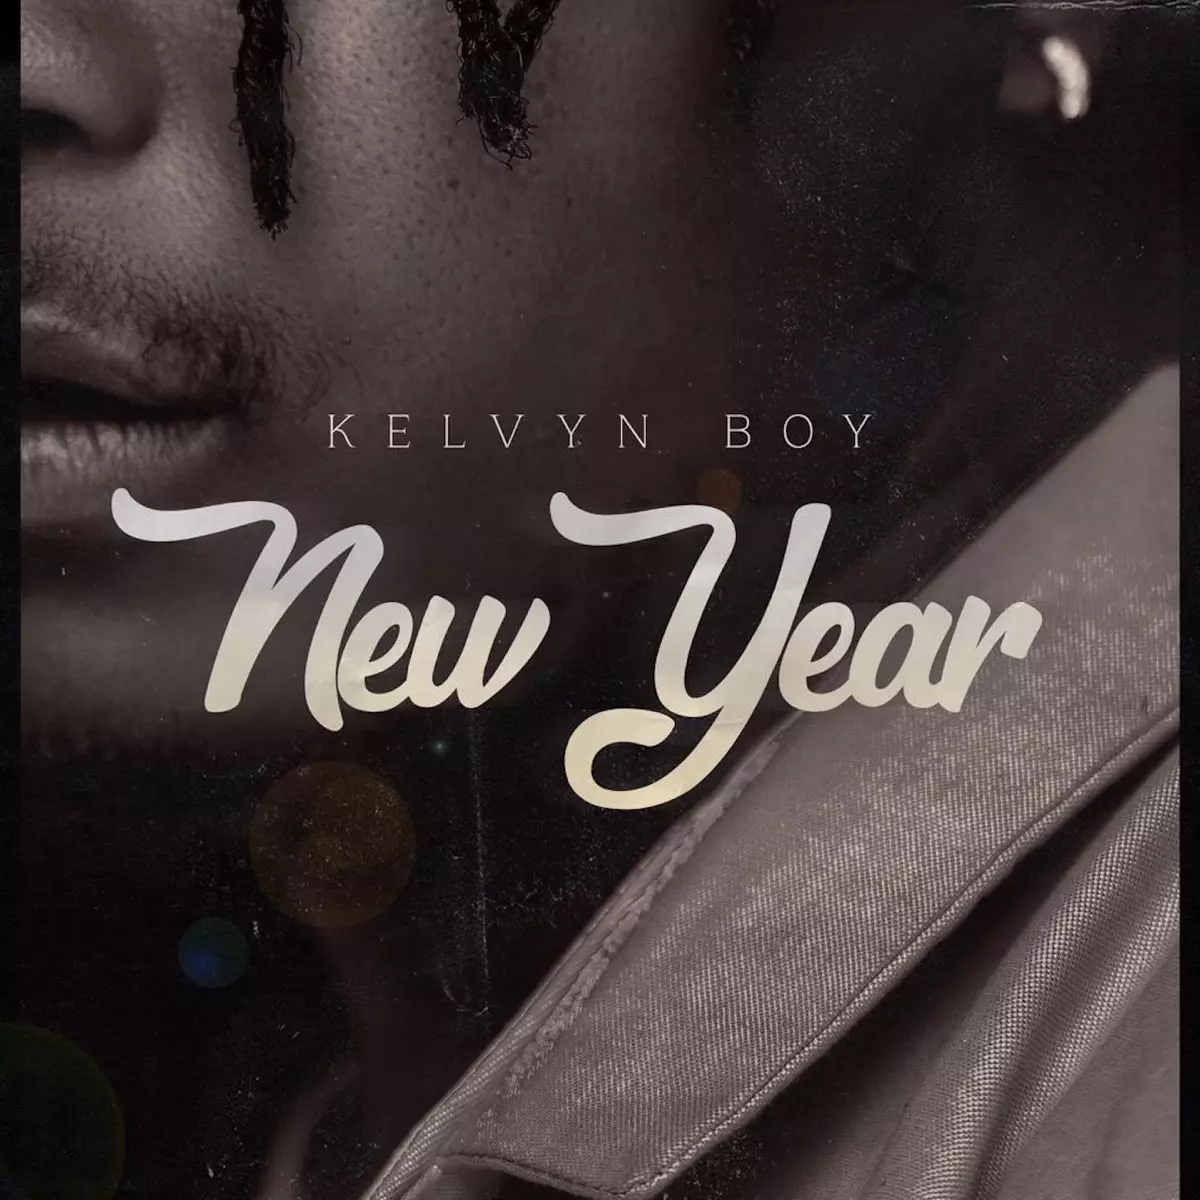 New Year - Single by Kelvyn Boy on Apple Music